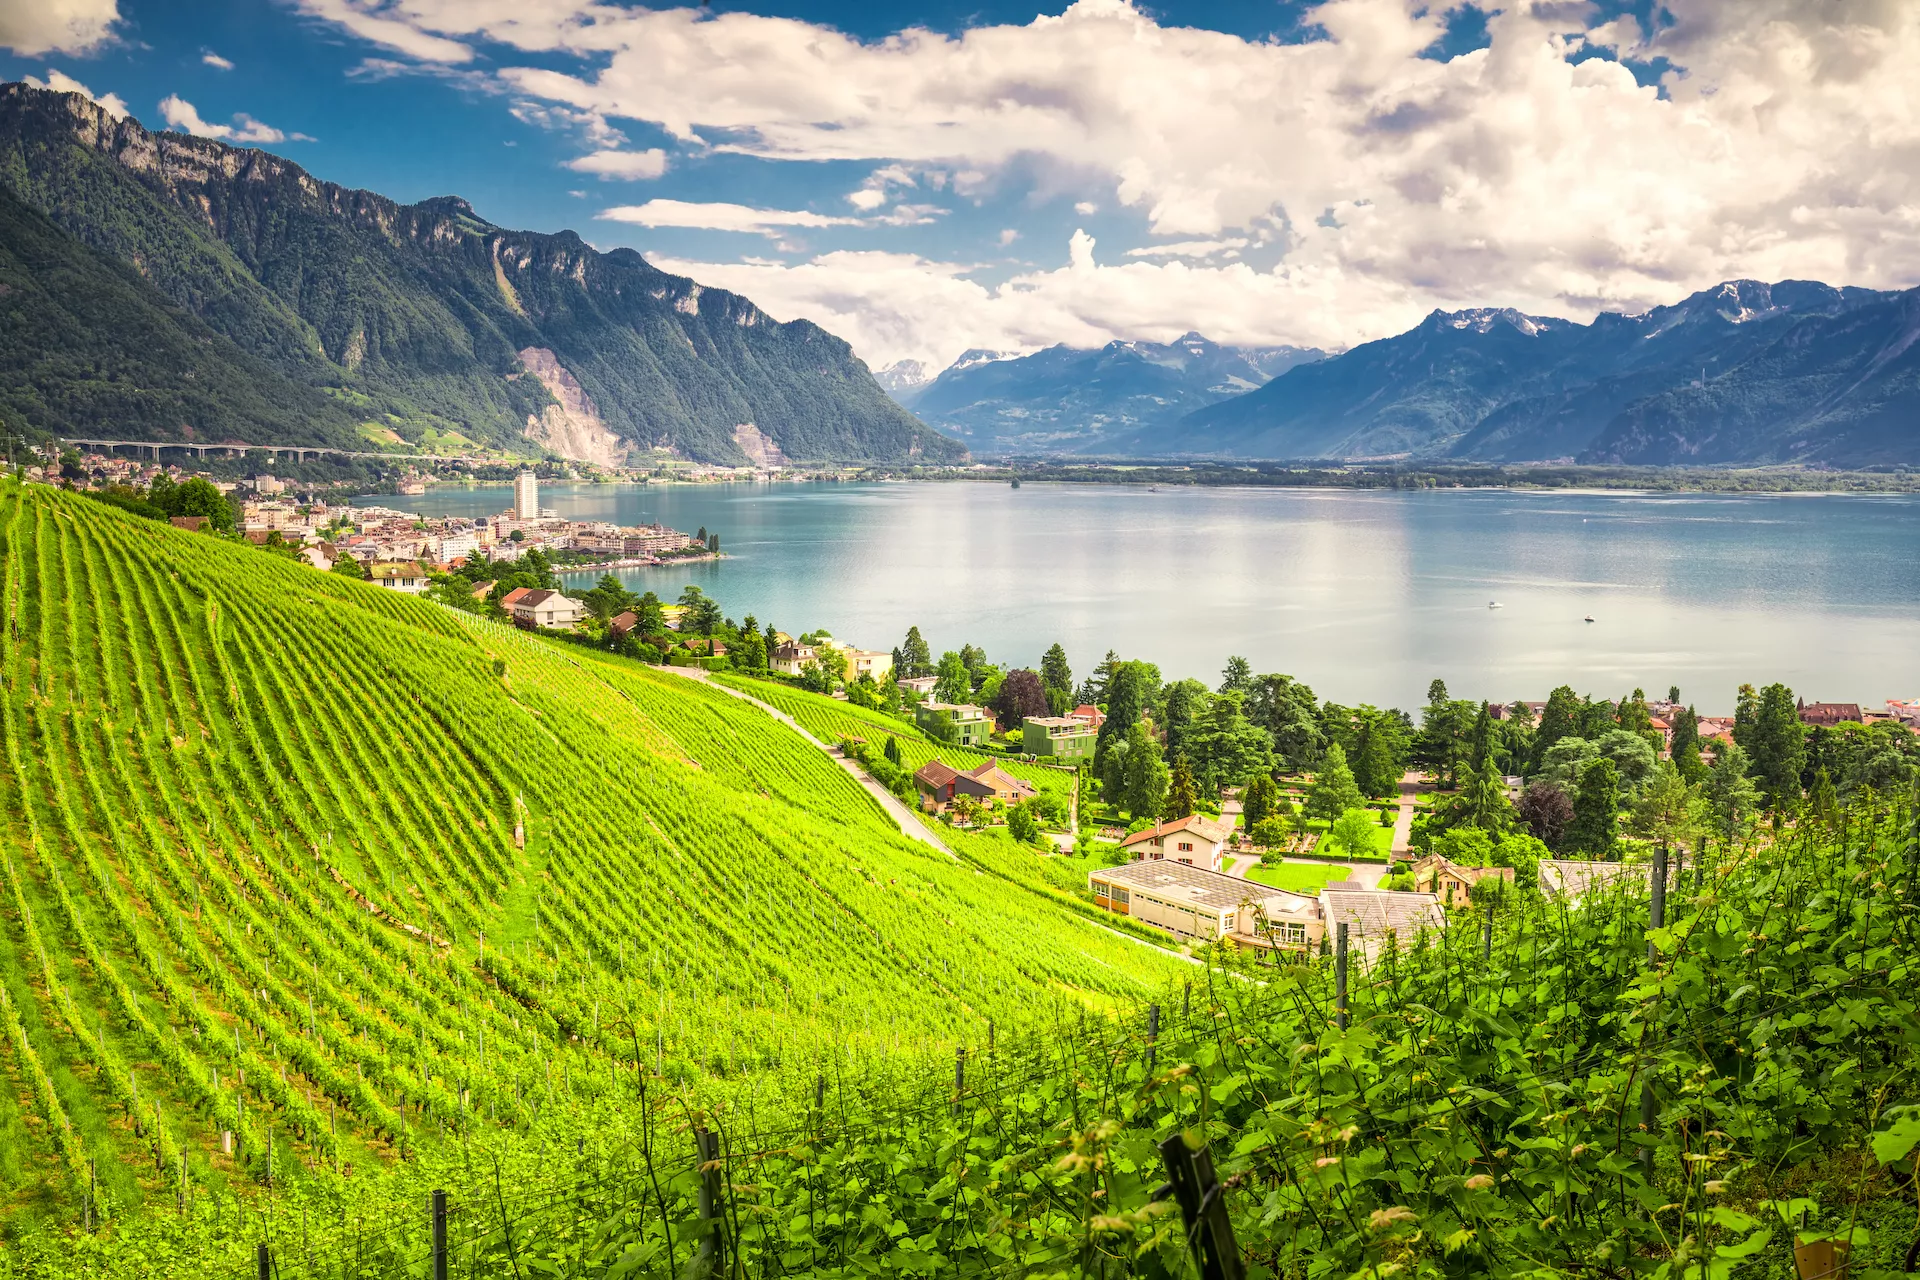 Ciudad de Montreux con el lago Lemán de los Alpes suizos y viñedos en la región de Lavaux